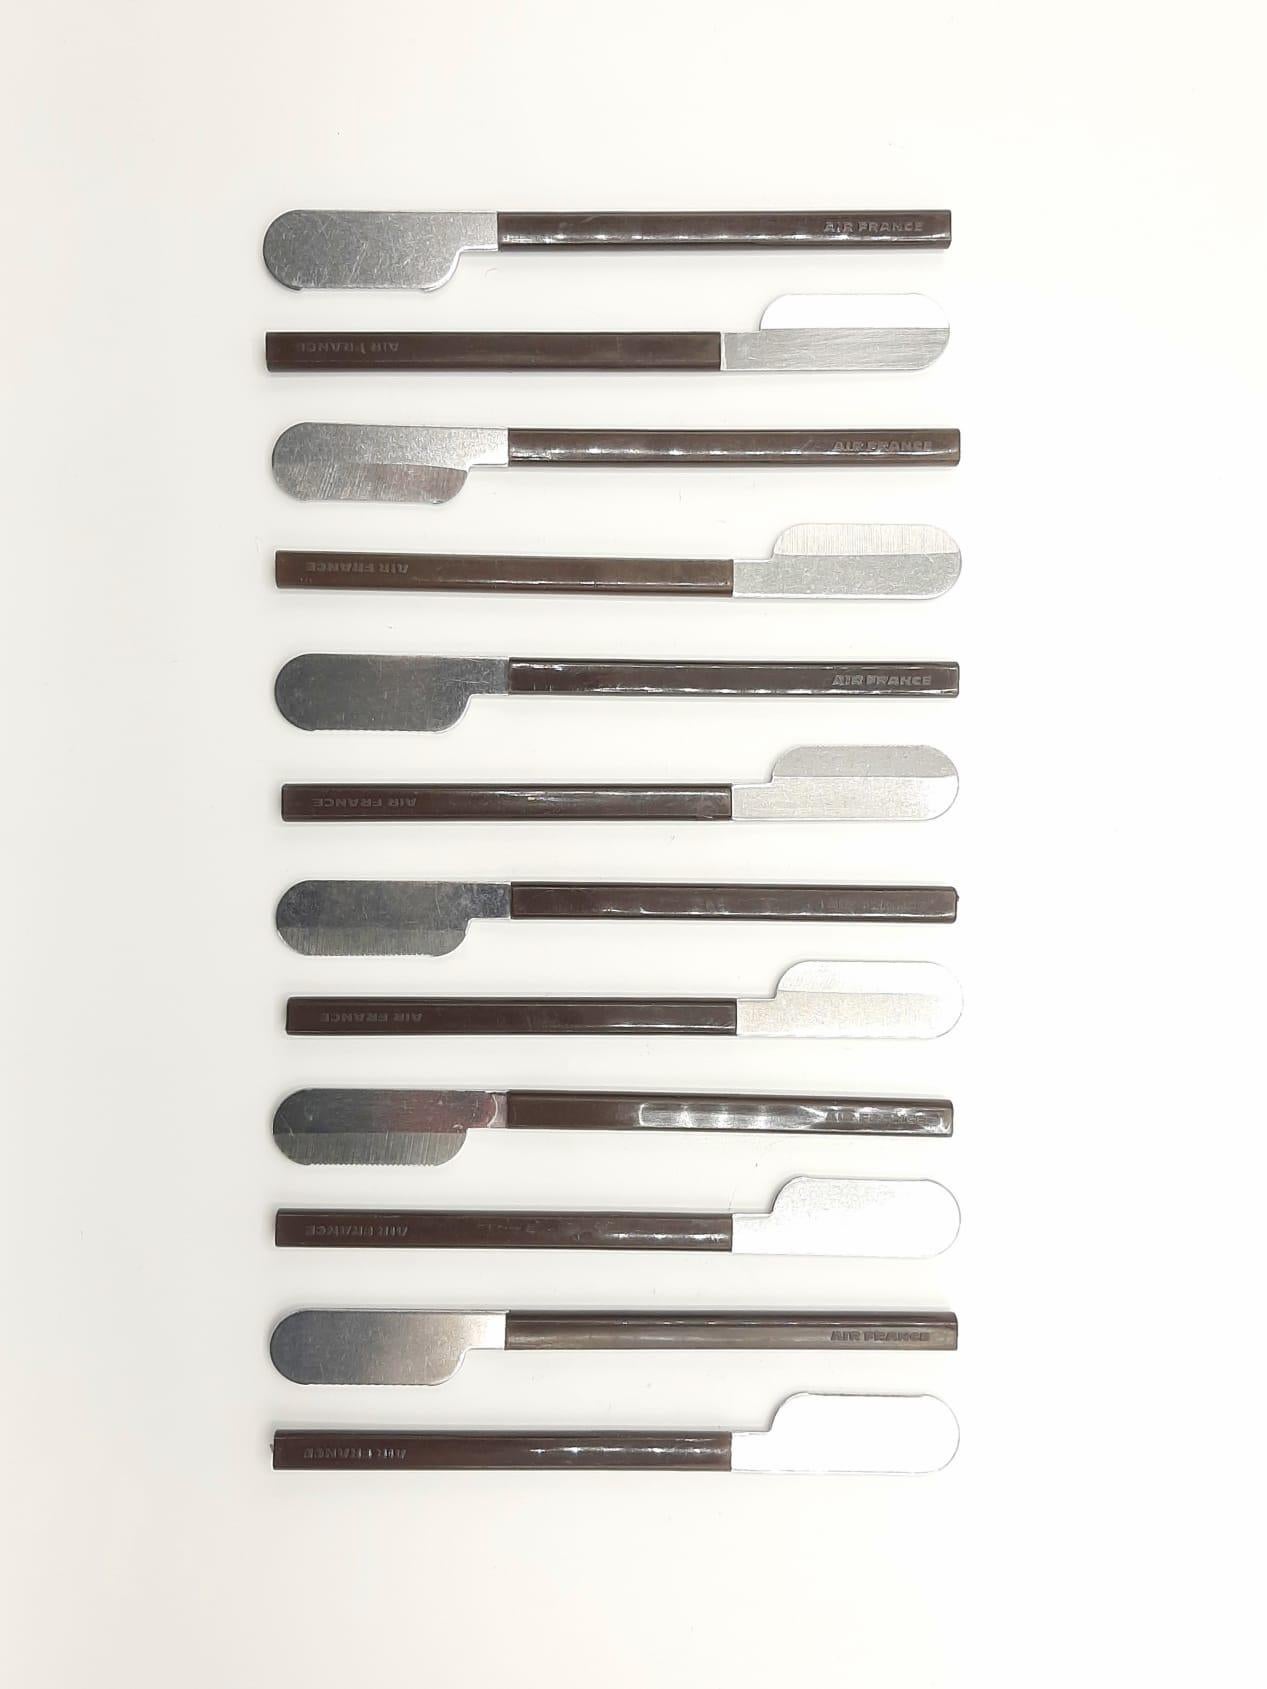 Dies ist ein originaler Bestecksatz aus 36 braunen Teilen: 12 Messer, 12 Löffel, 12 Gabeln.
Entworfen vom Designer Raymond Loewy für Air France. Sie sind aus Stahl und braunem Kunststoff gefertigt. Jedes Stück ist mit der Marke 